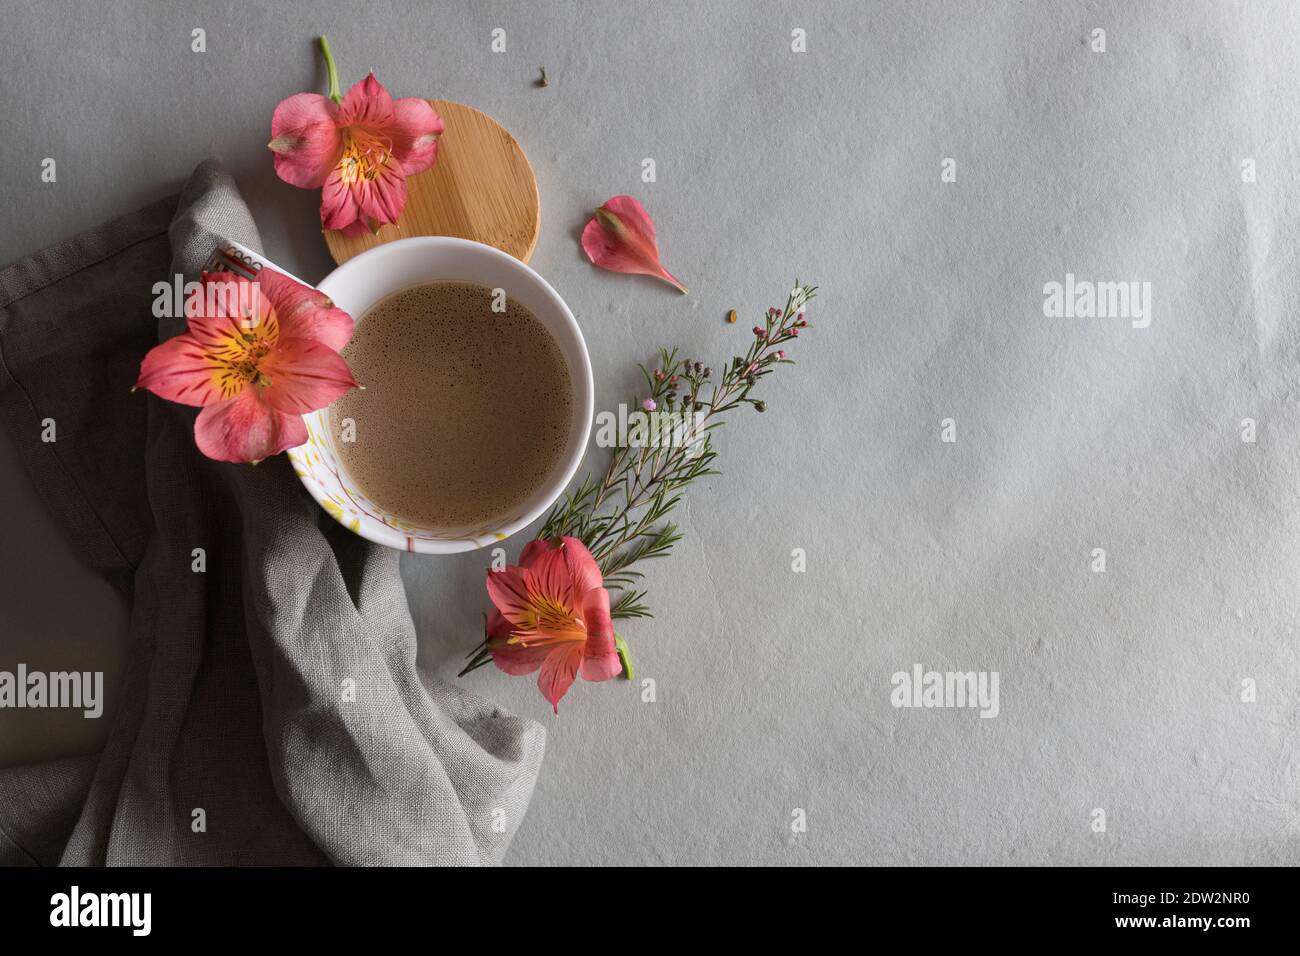 Vue en hauteur d'une tasse de café mousseux avec une belle fleur rose rouge en haut et quelques fleurs supplémentaires autour. Banque D'Images